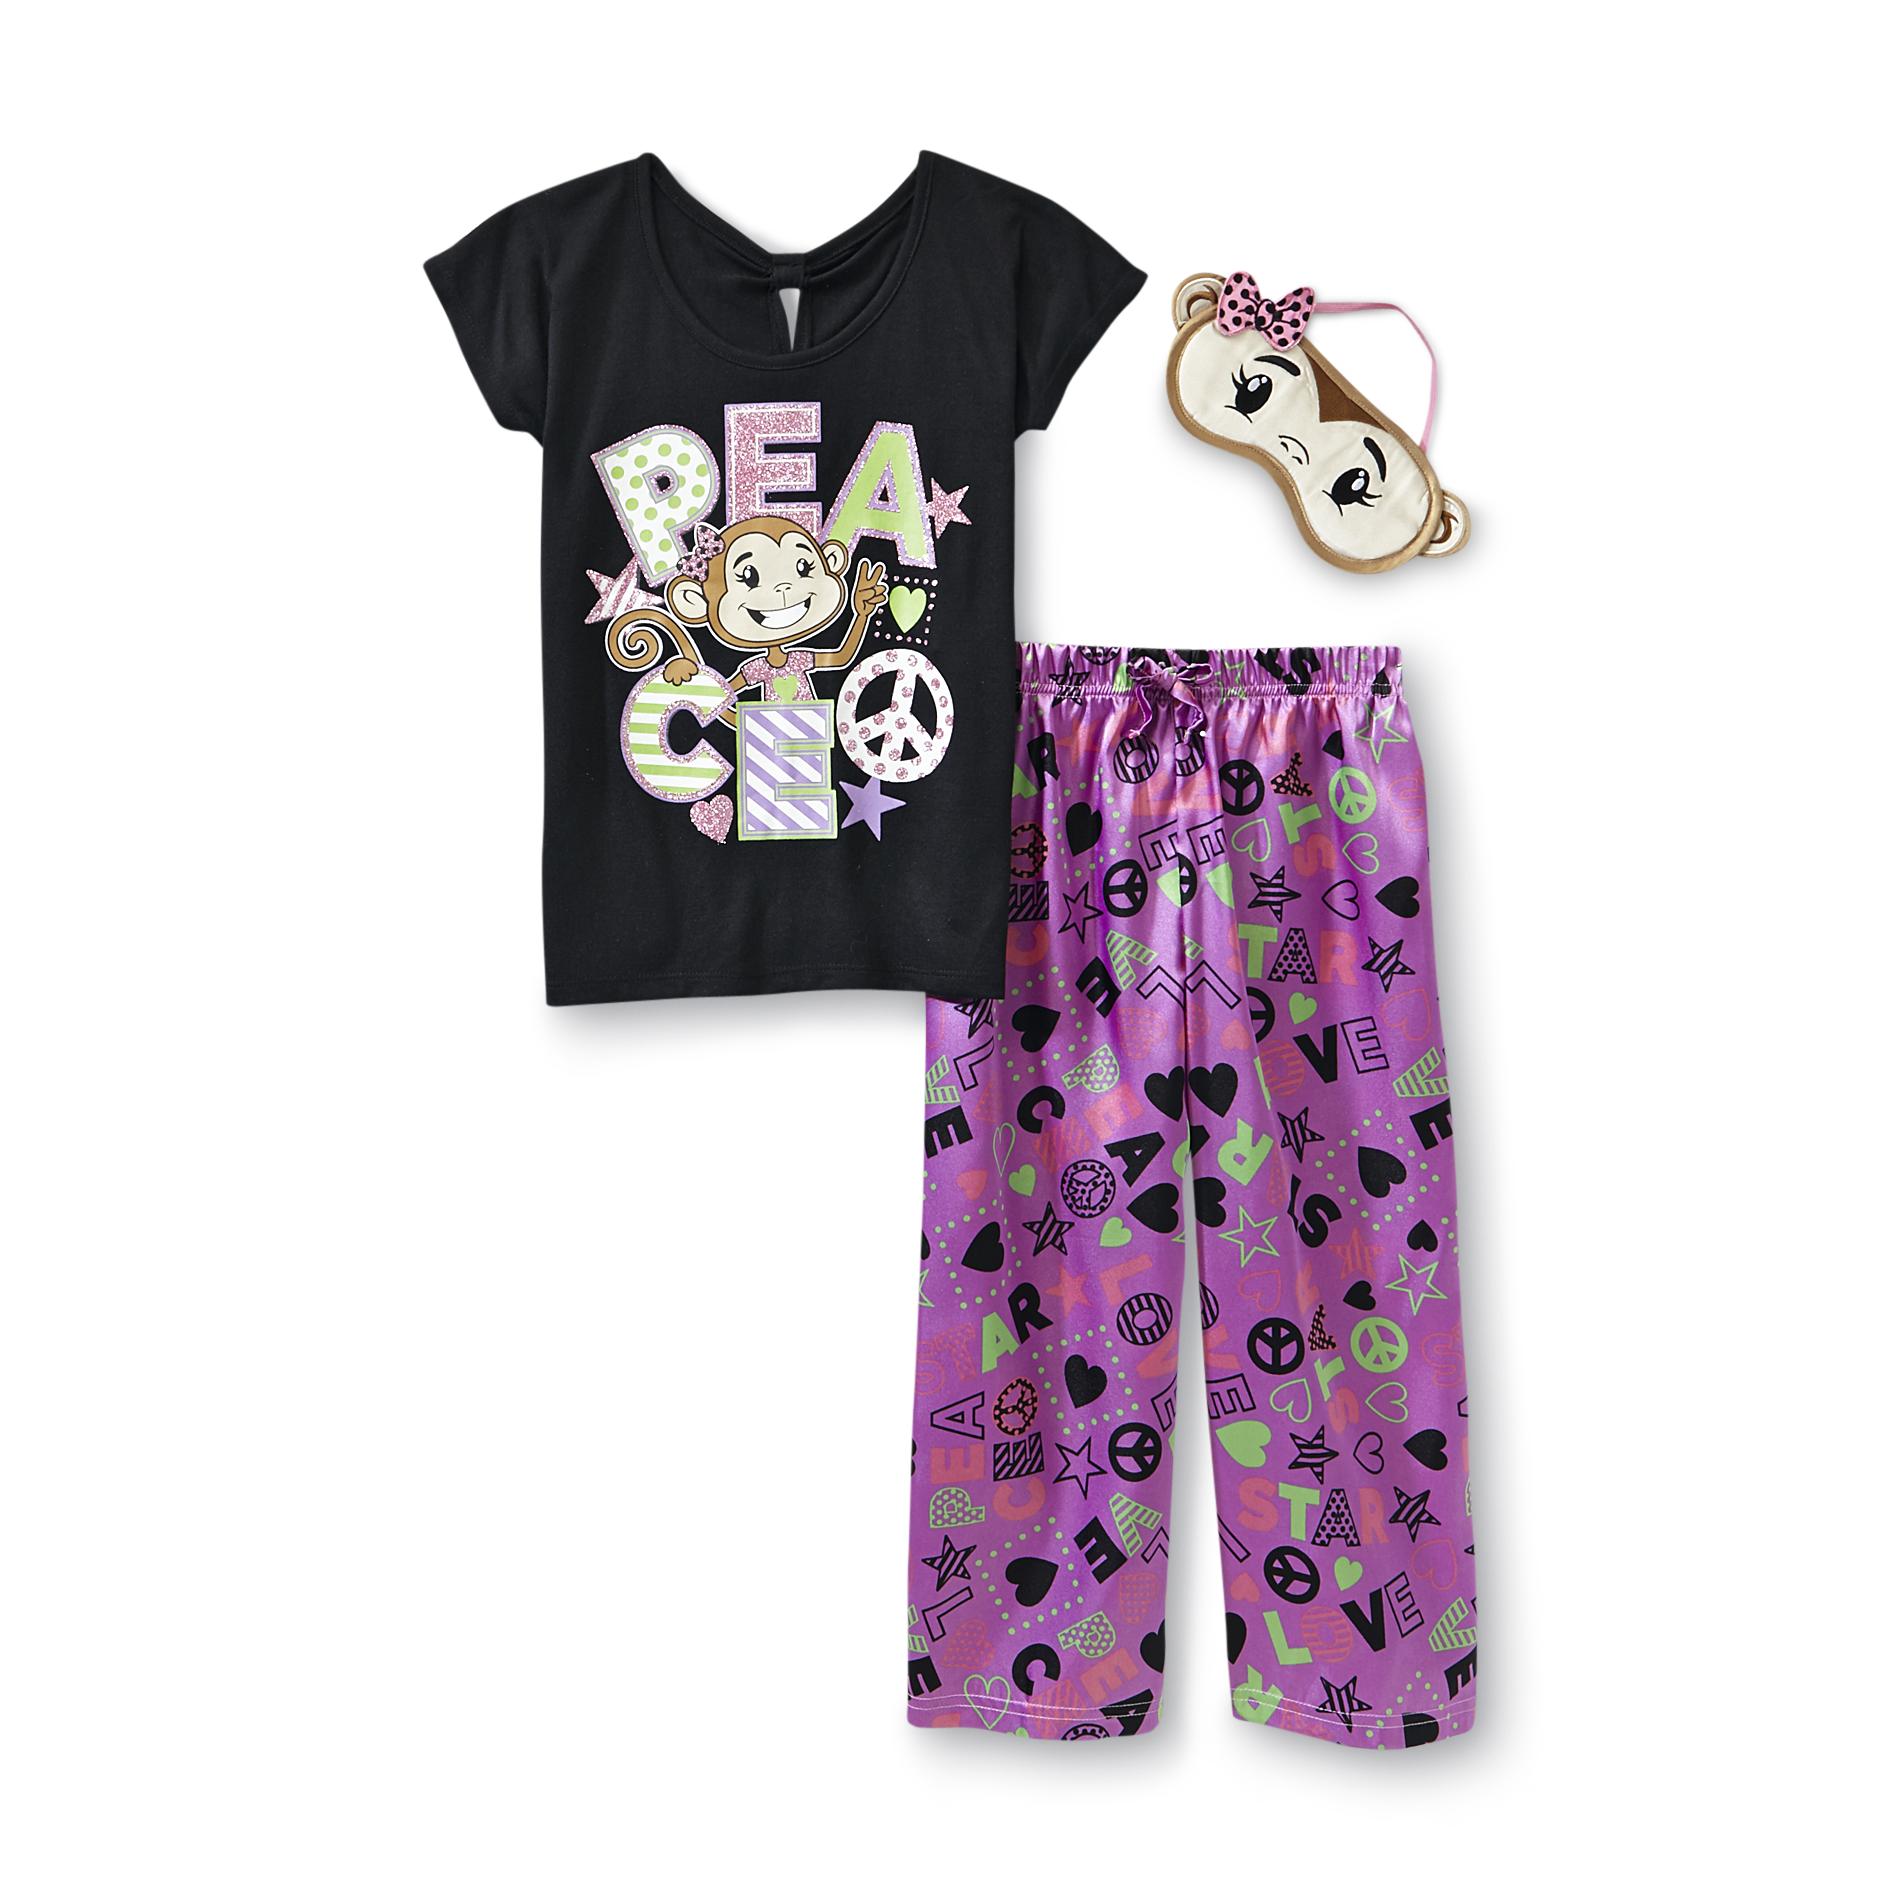 Joe Boxer Girl's Graphic Pajama Top  Bottoms & Sleep Mask - Peace